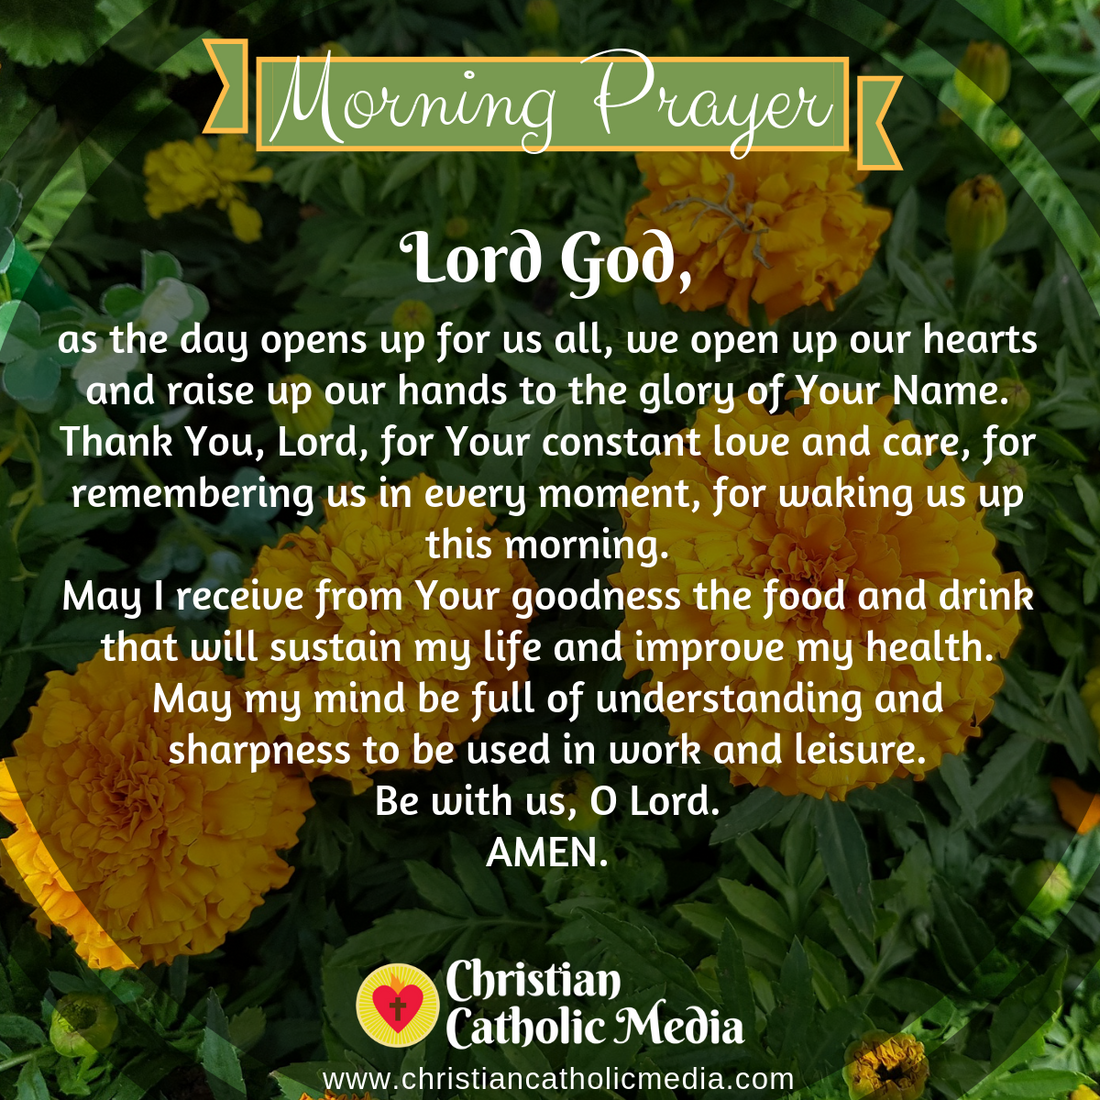 Morning Prayer Catholic Tuesday 3-31-2020